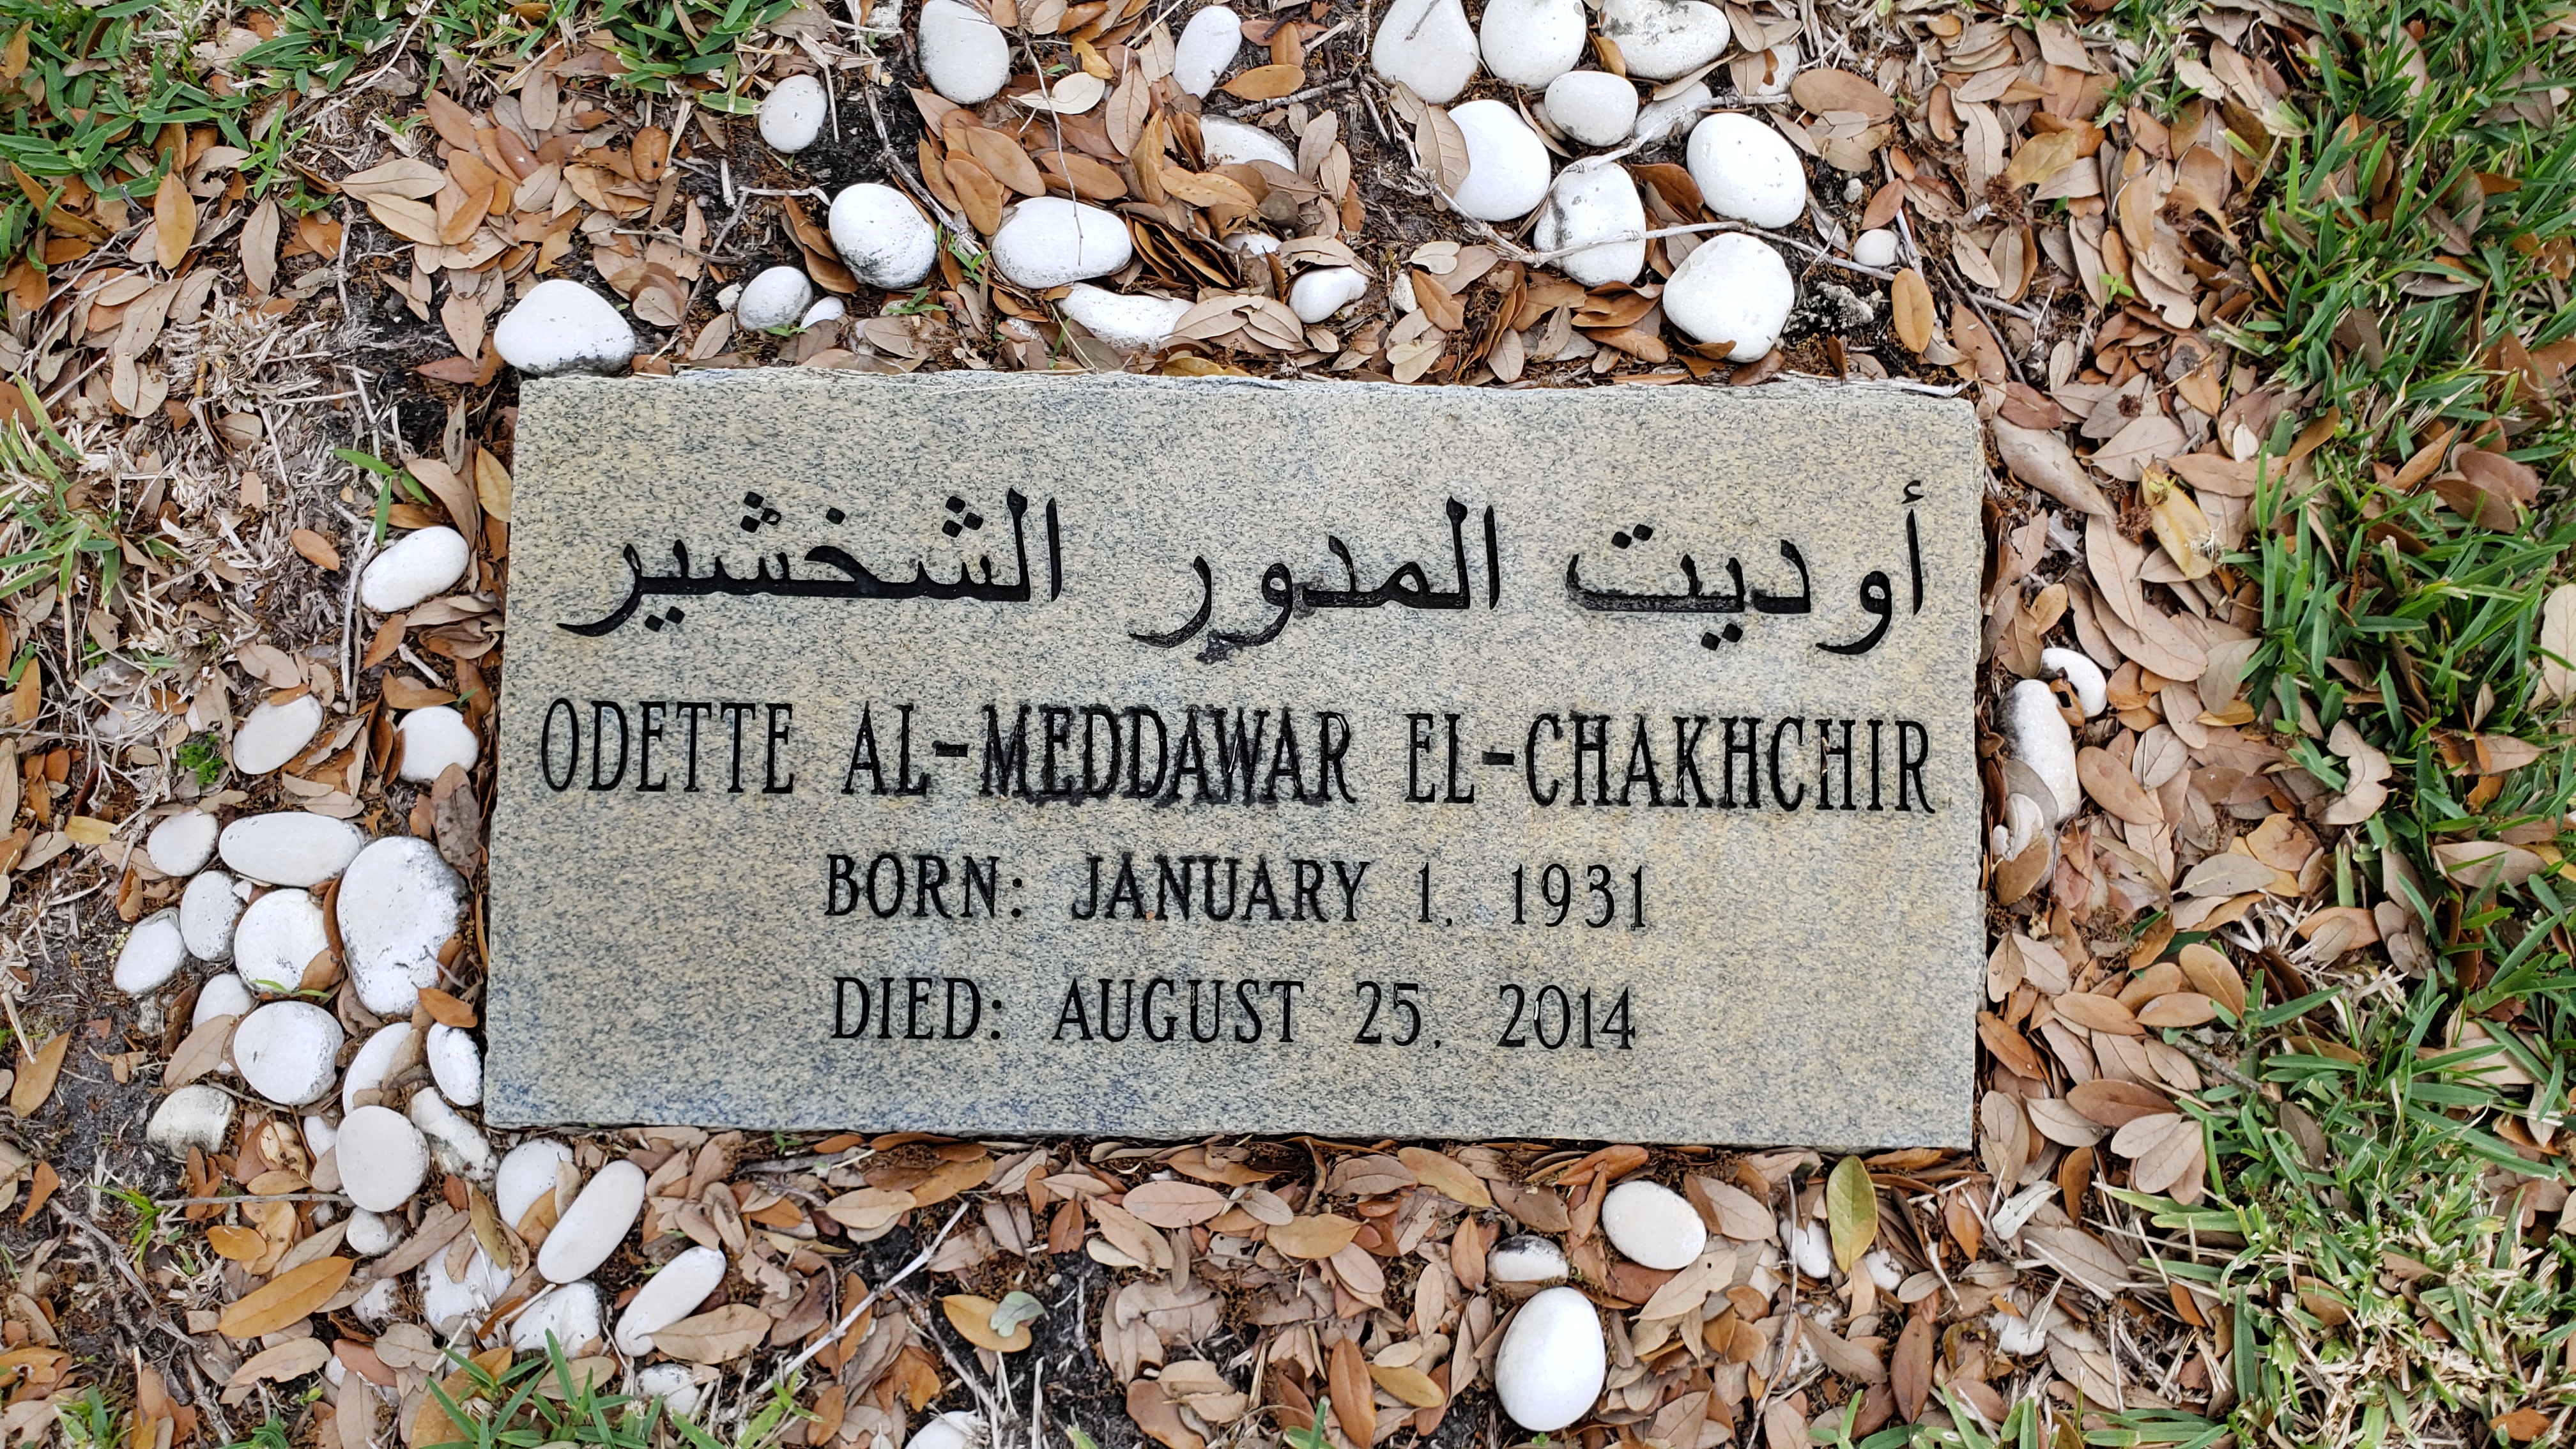 Odette Al-Meddawar El-Chakhchir